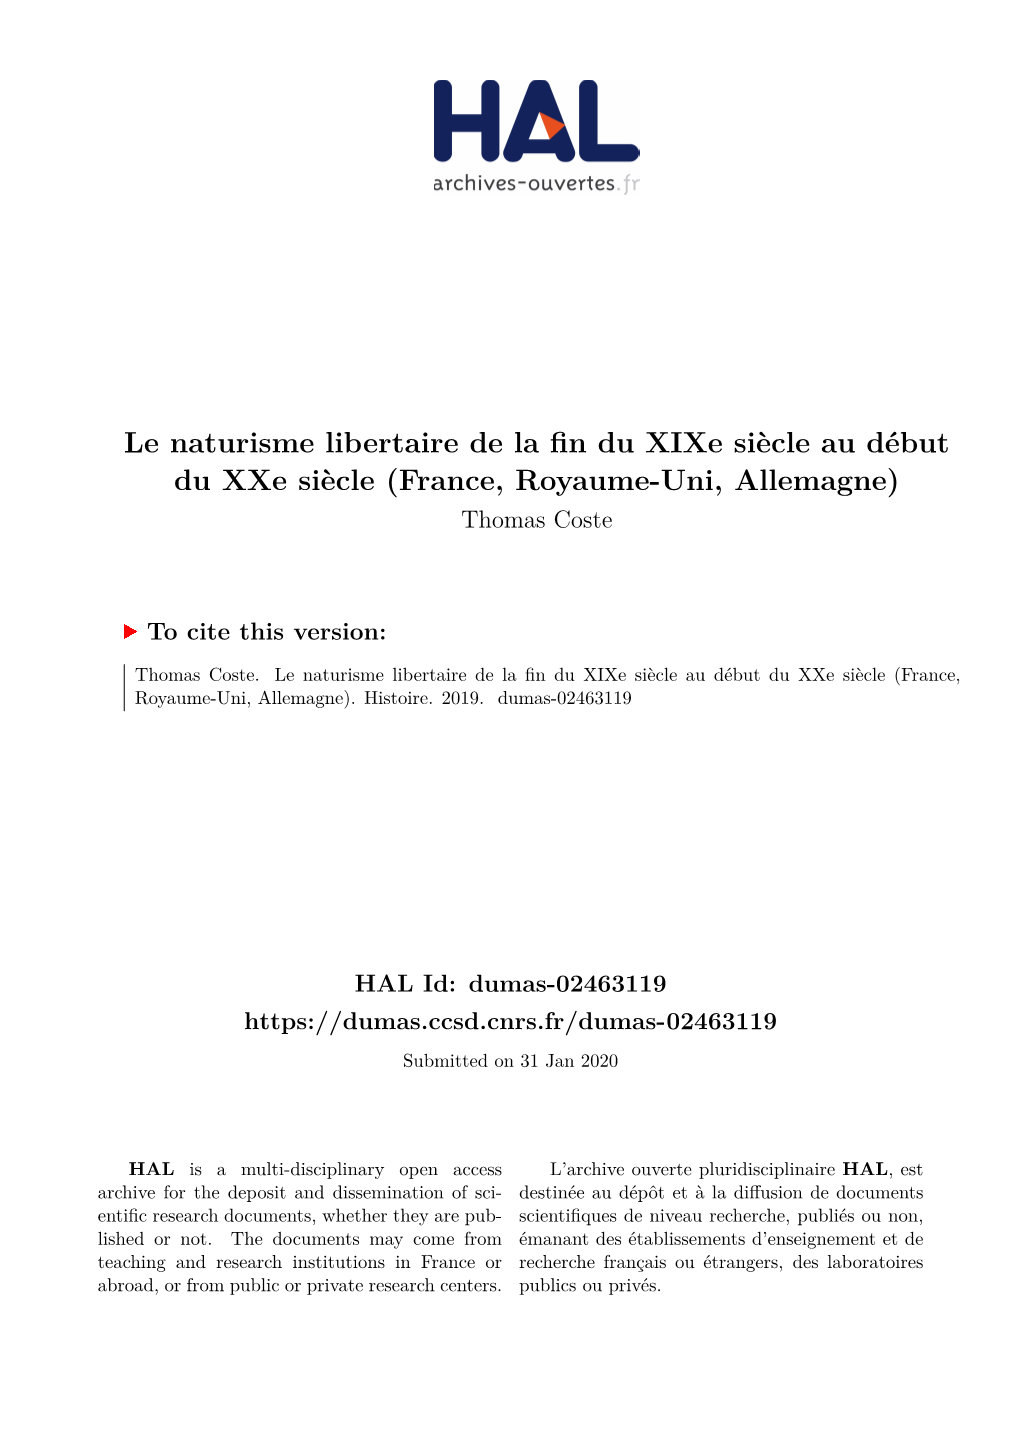 Le Naturisme Libertaire De La Fin Du Xixe Siècle Au Début Du Xxe Siècle (France, Royaume-Uni, Allemagne) Thomas Coste